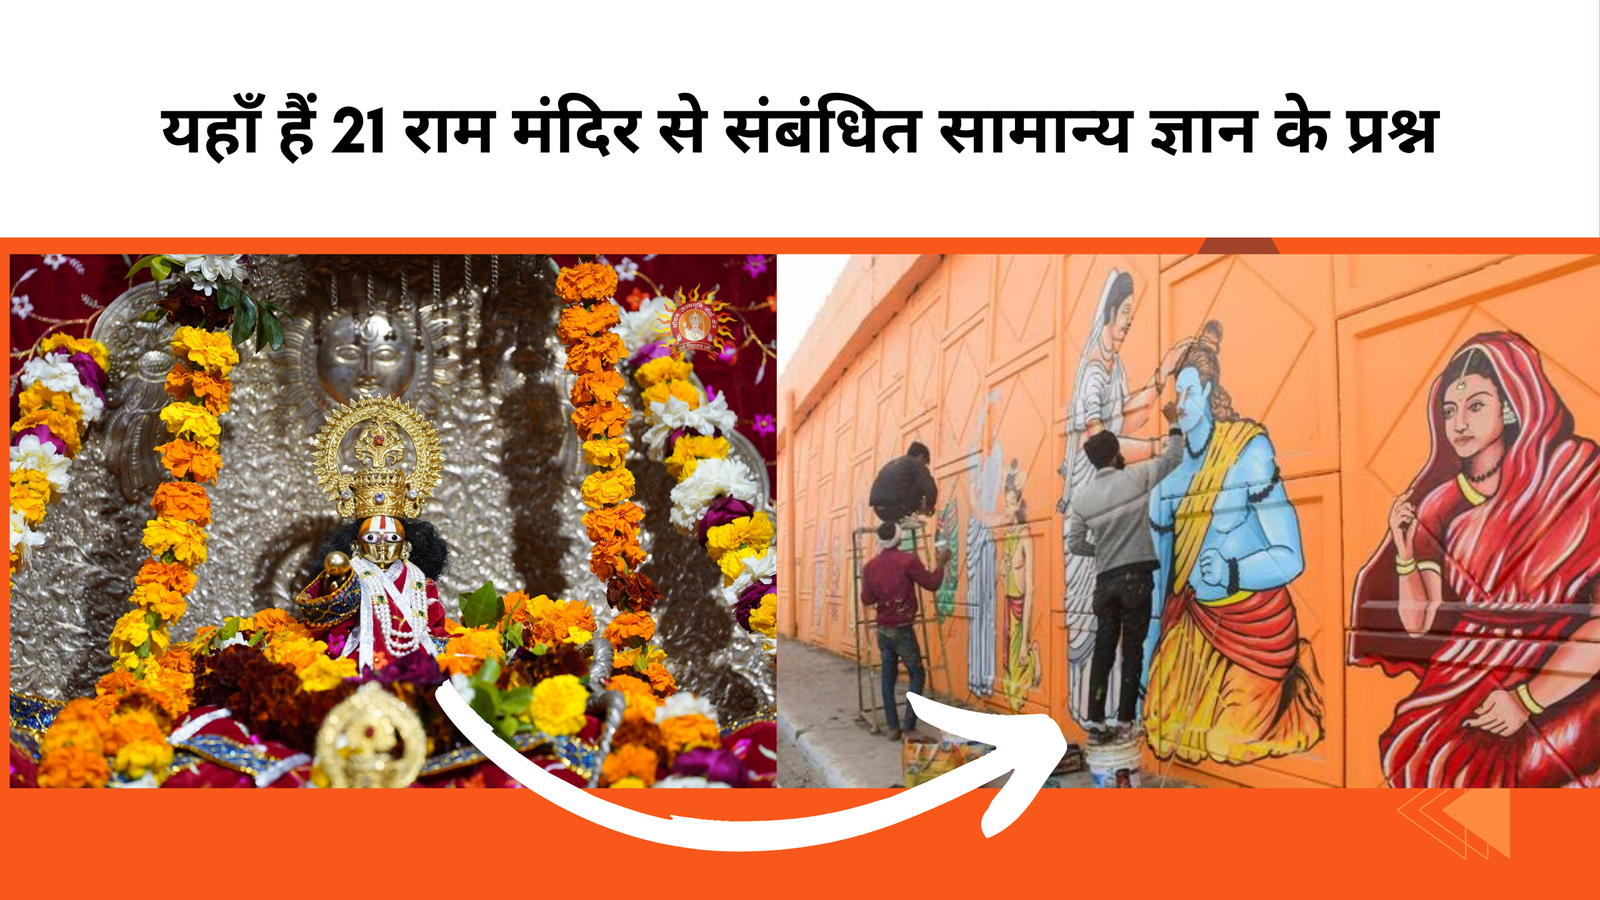 ayodhya ram mandir ke mukhya shilpkar kaun hai